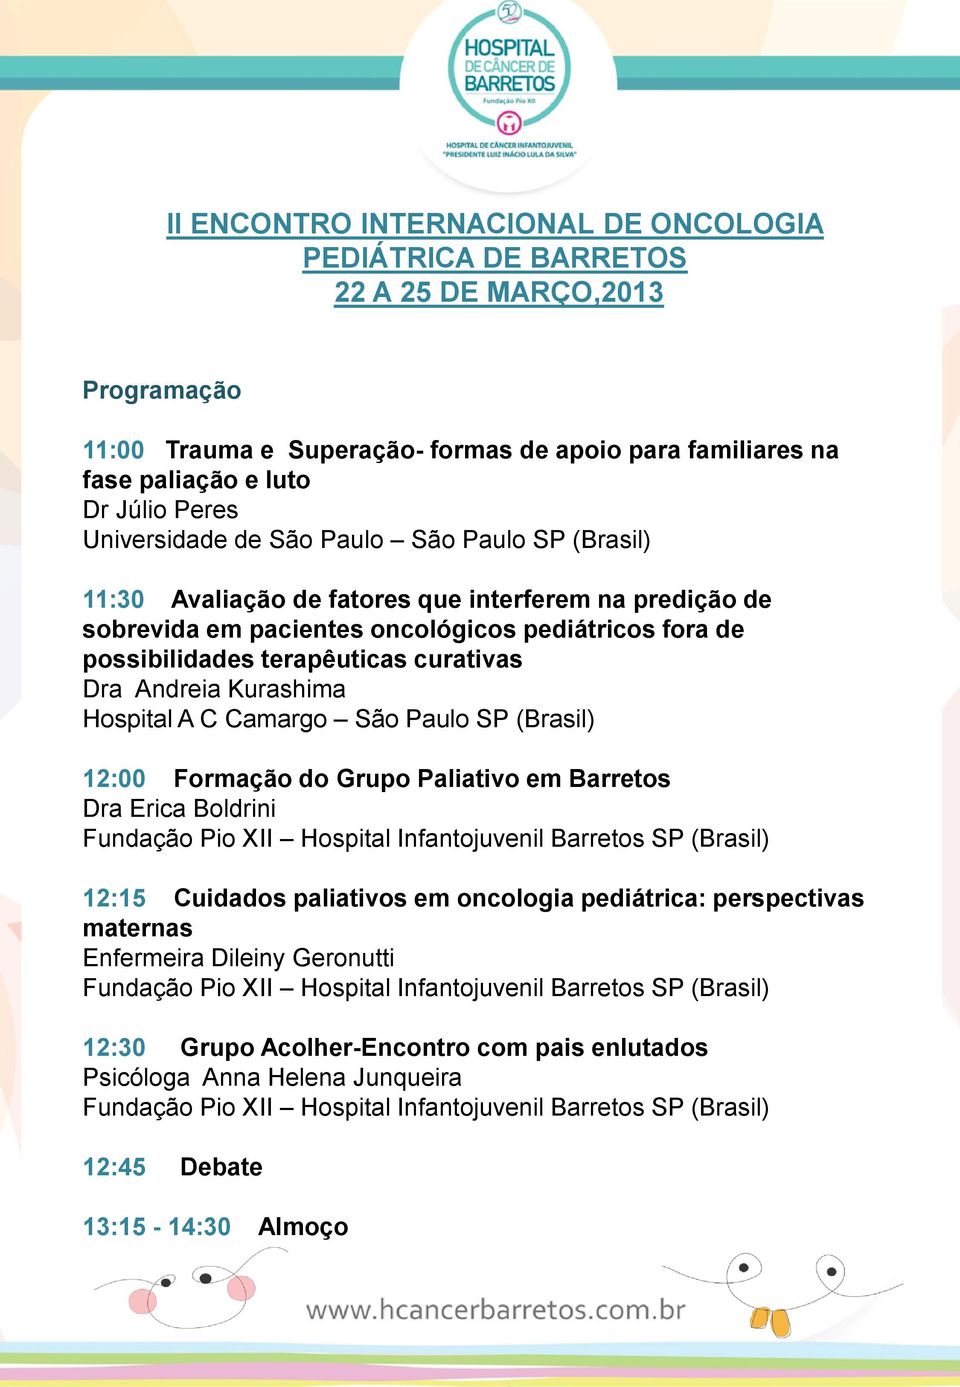 Barretos Dra Erica Boldrini Fundação Pio XII Hospital Infantojuvenil Barretos SP (Brasil) 12:15 Cuidados paliativos em oncologia pediátrica: perspectivas maternas Enfermeira Dileiny Geronutti